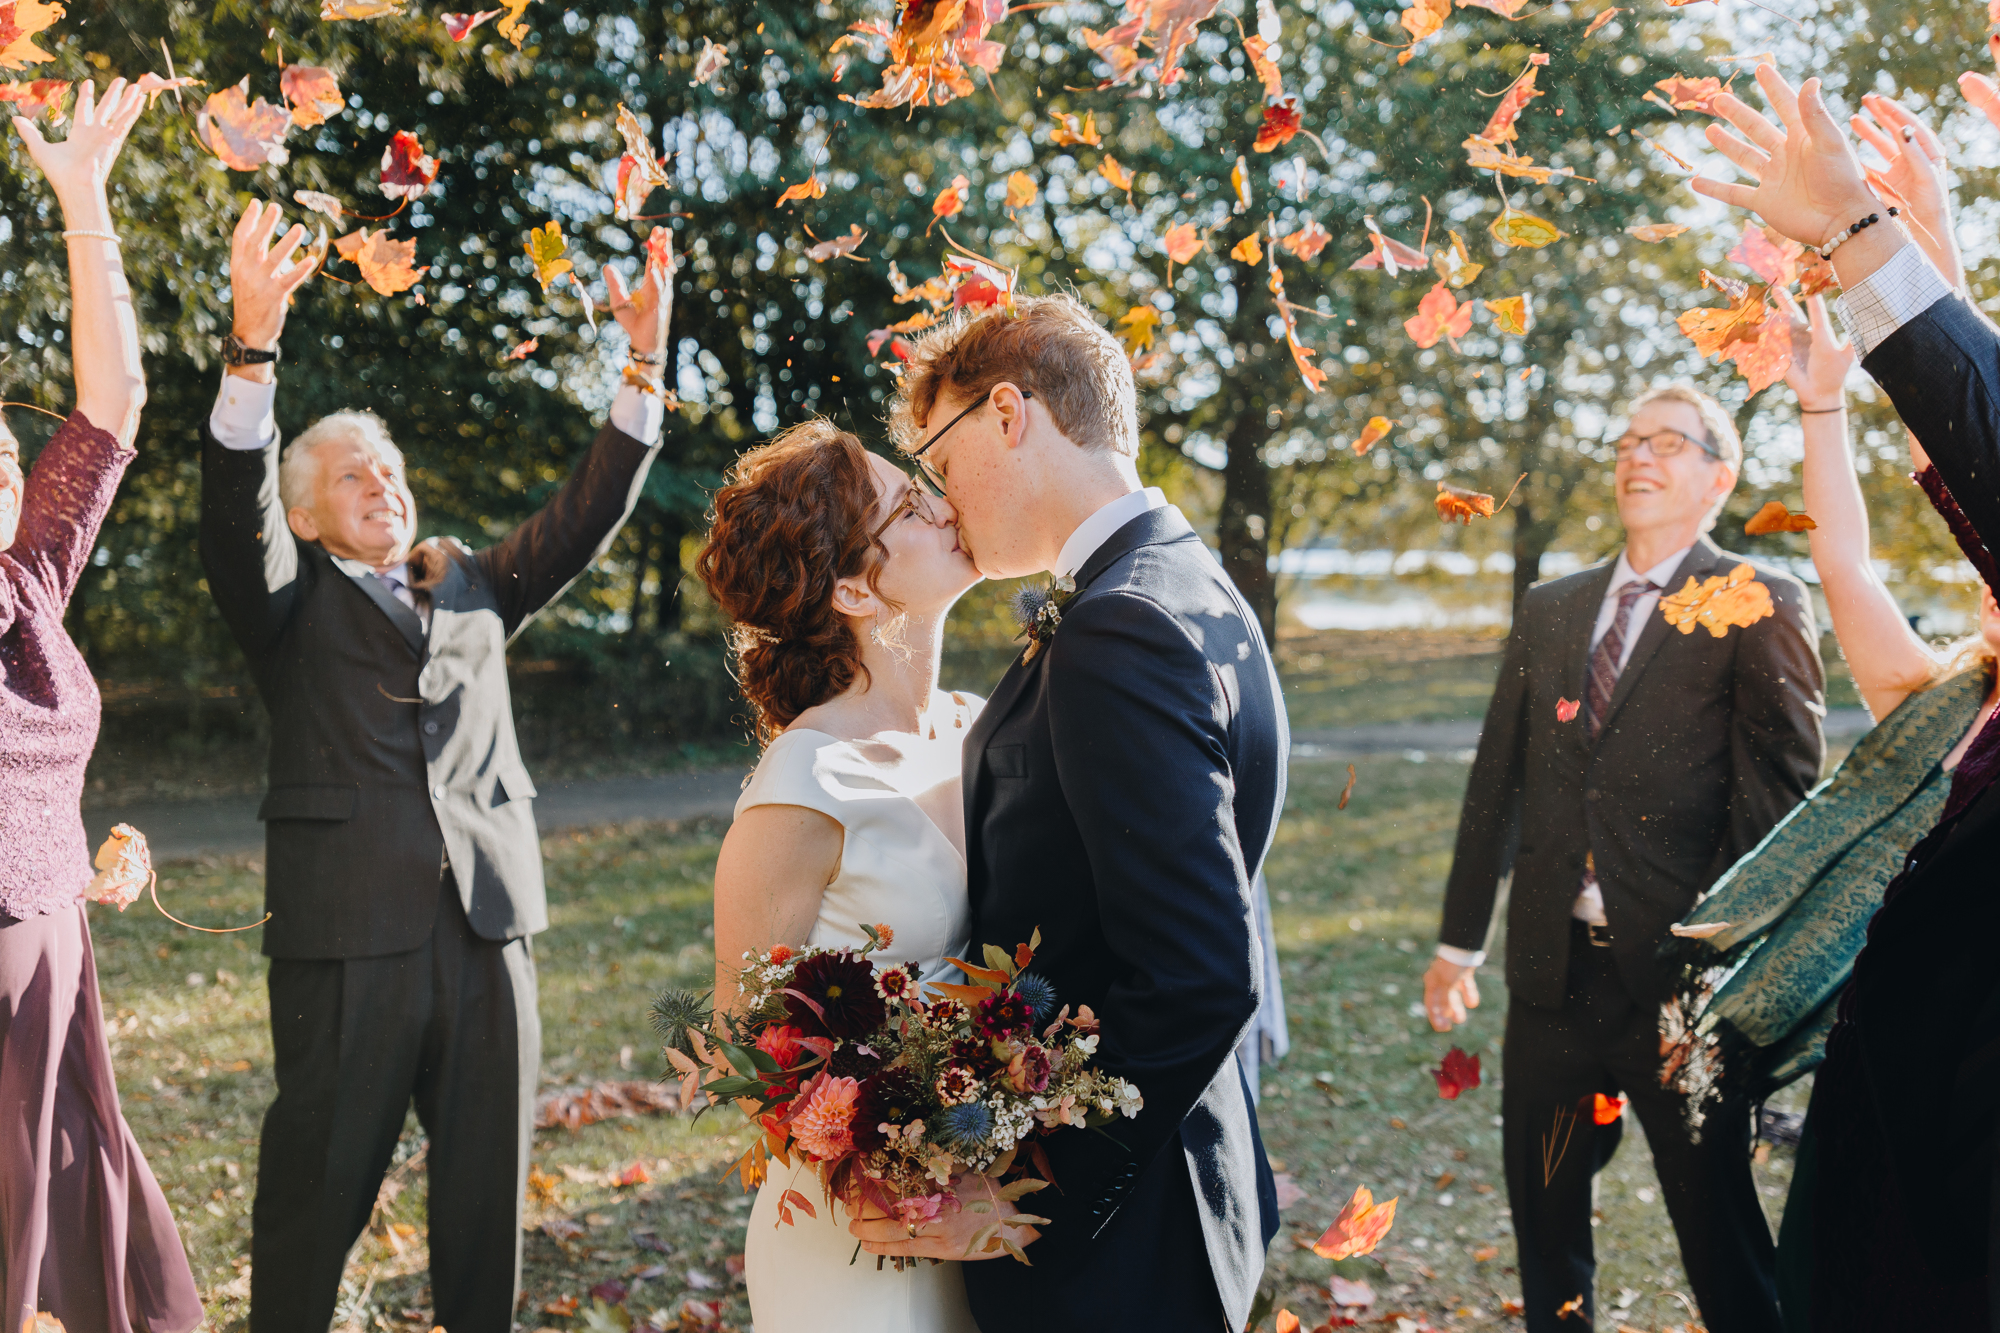 Candid fall wedding photos in Prospect Park Brooklyn